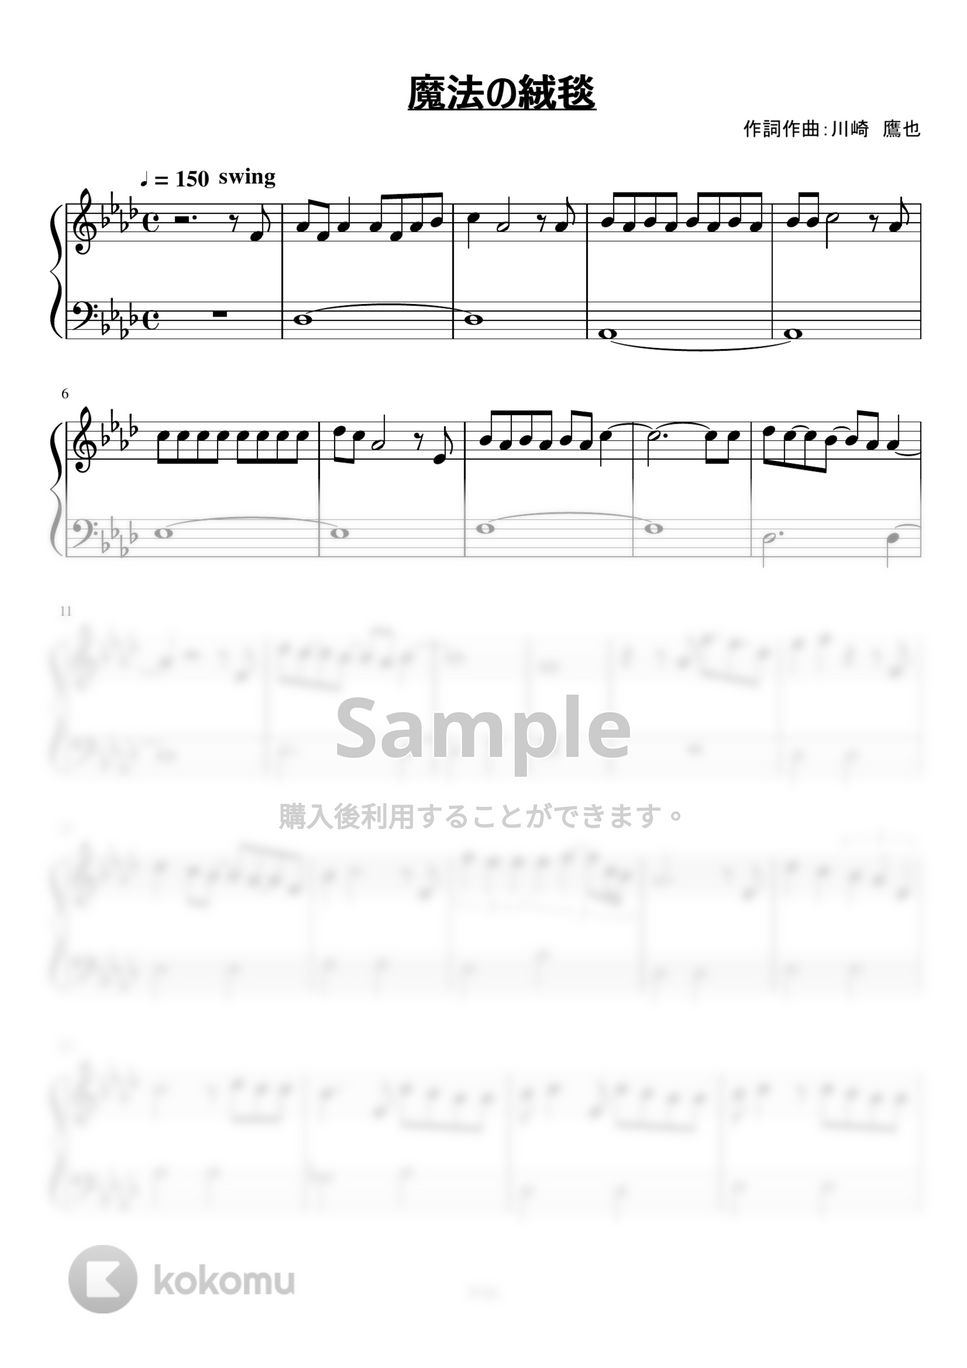 川崎鷹也 - 魔法の絨毯 (初級ピアノ / フルバージョン) by さく山P